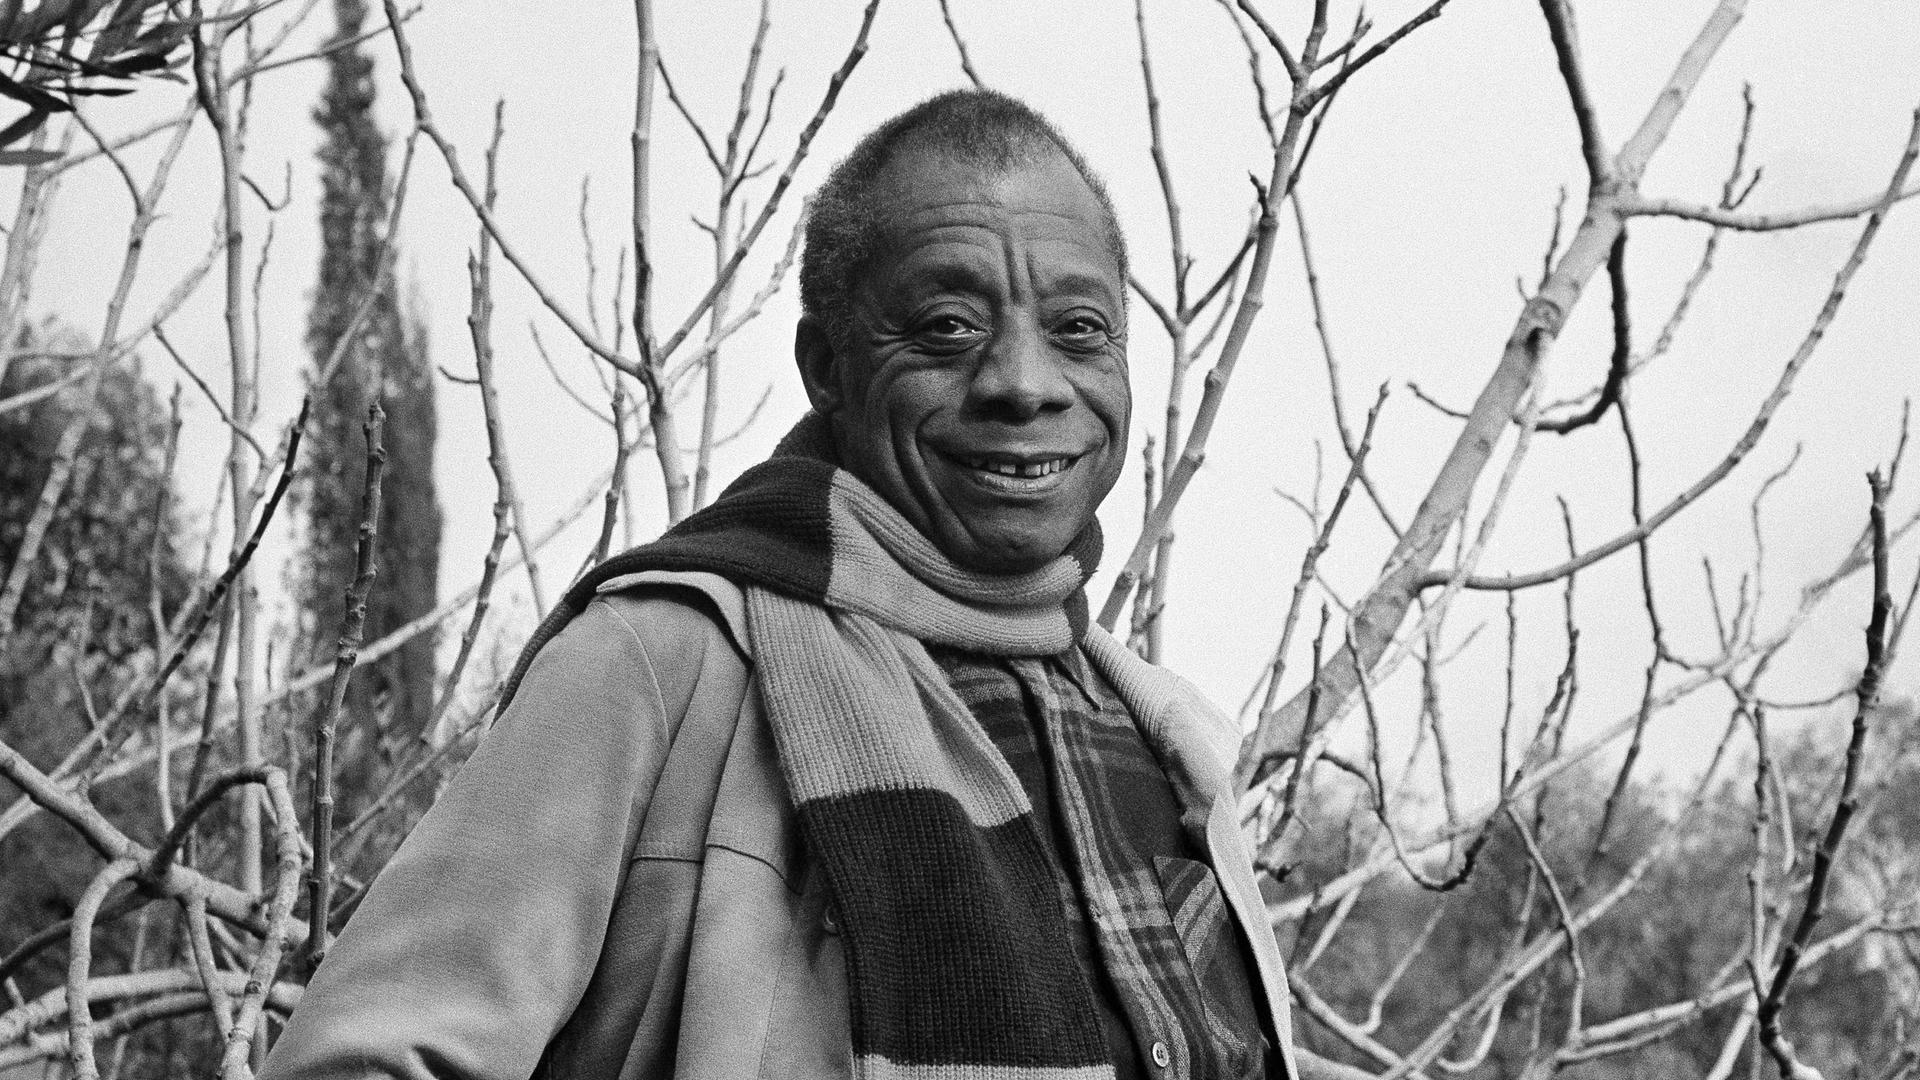 Der amerikanische Schriftsteller James Baldwin, fotografiert auf dem Grundstück seines Hauses an der französischen Riviera. Er trägt ein großkariertes Hemd, darüber eine offene Jacke und einen Schal.